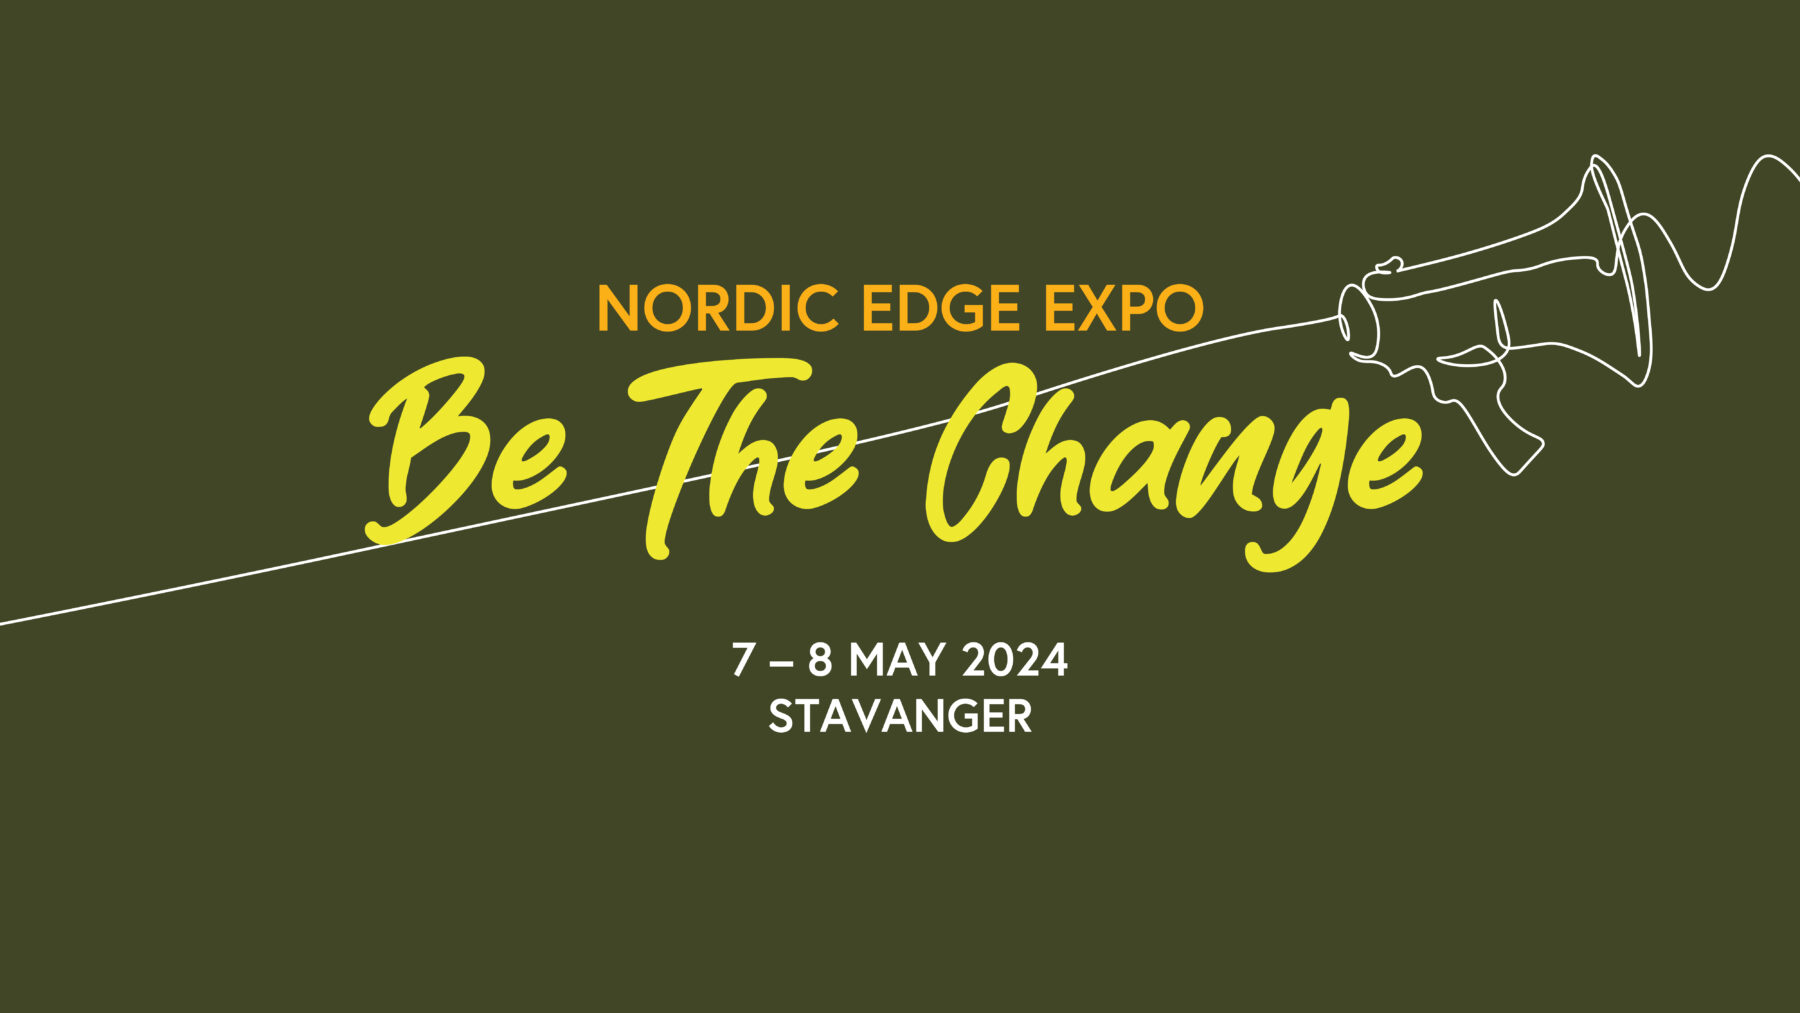 Nordic Edge Expo 2024